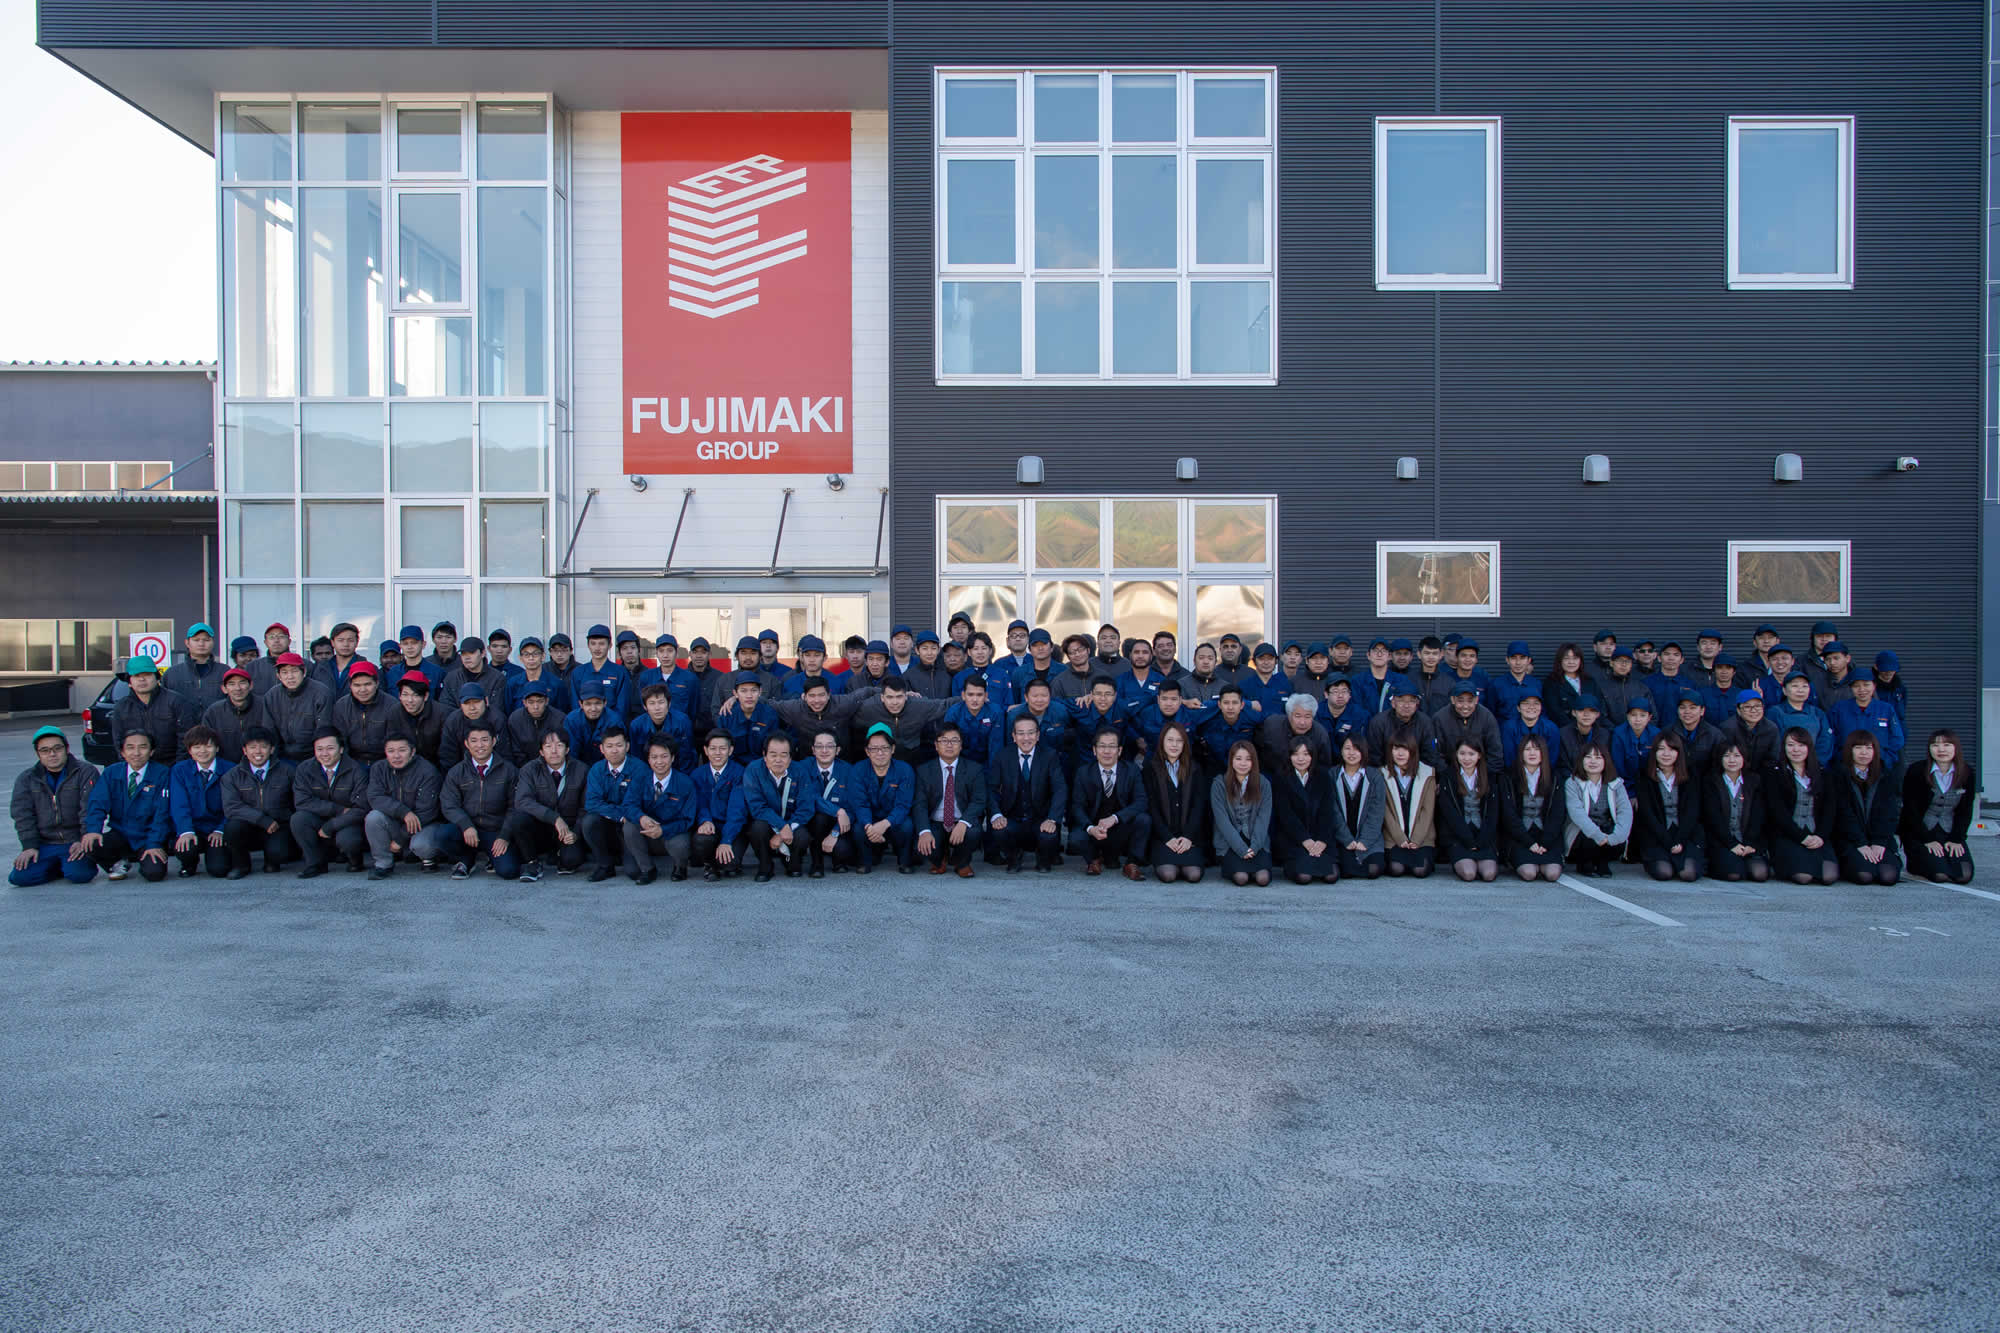 株式会社スチールポリッシュ 拠点 関連会社 グループ情報 F C ホールディングス Fujimaki Group Provide New Value For Manufacturing Industry 製造業に新しい価値を提供する